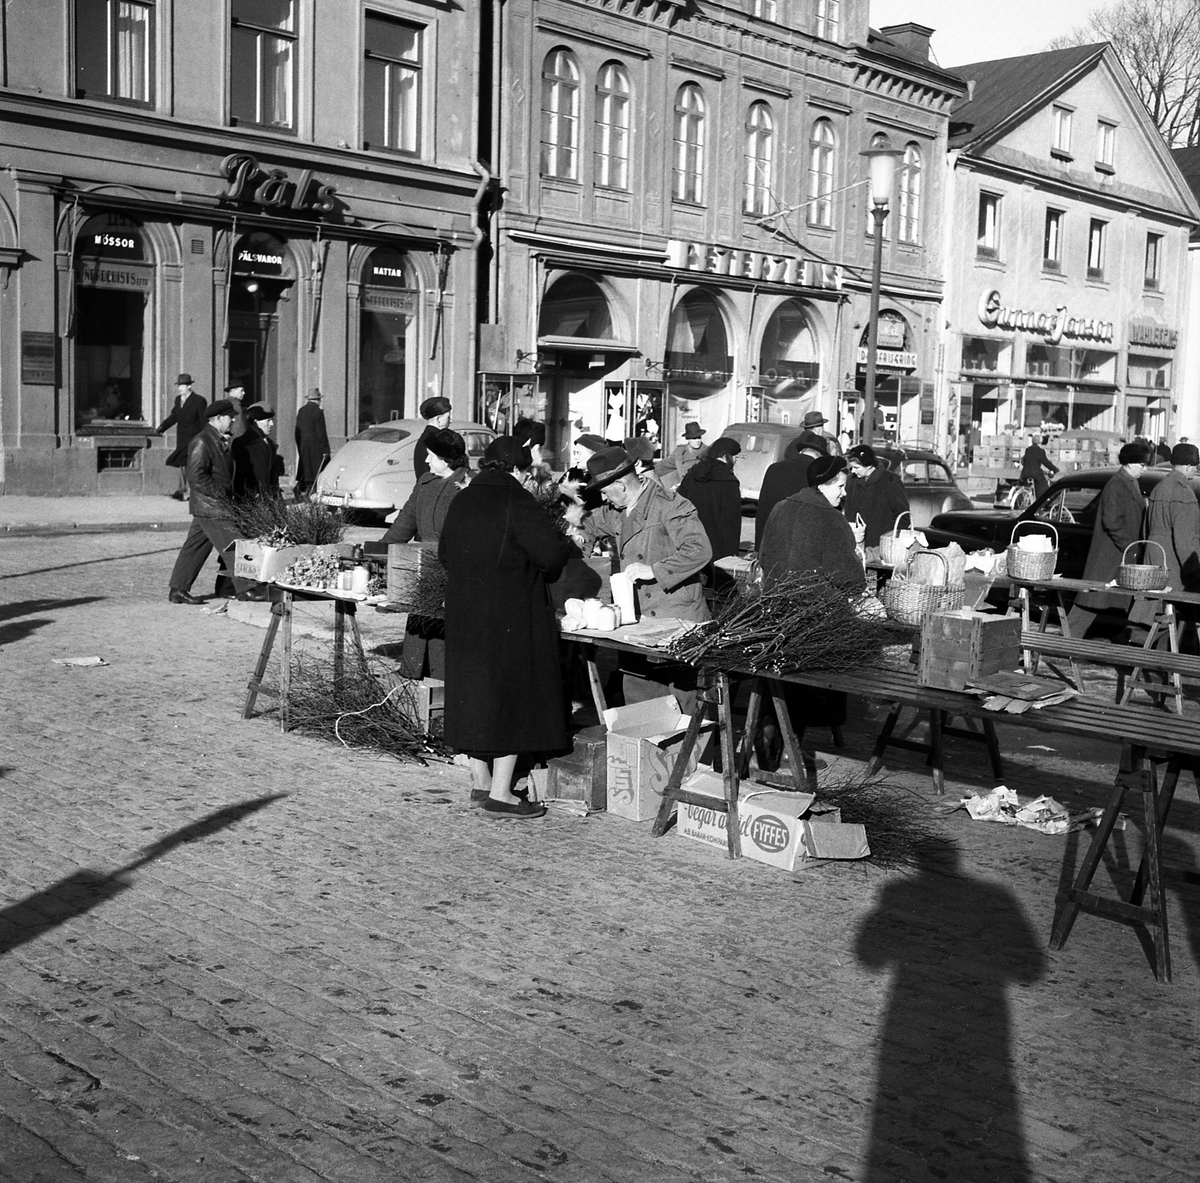 Livlig torghandel på Stora torget i Linköping vårvintern 1956. Hög tid att införskaffa ris till påsken. I fonden husraden utmed torgets västra sida.